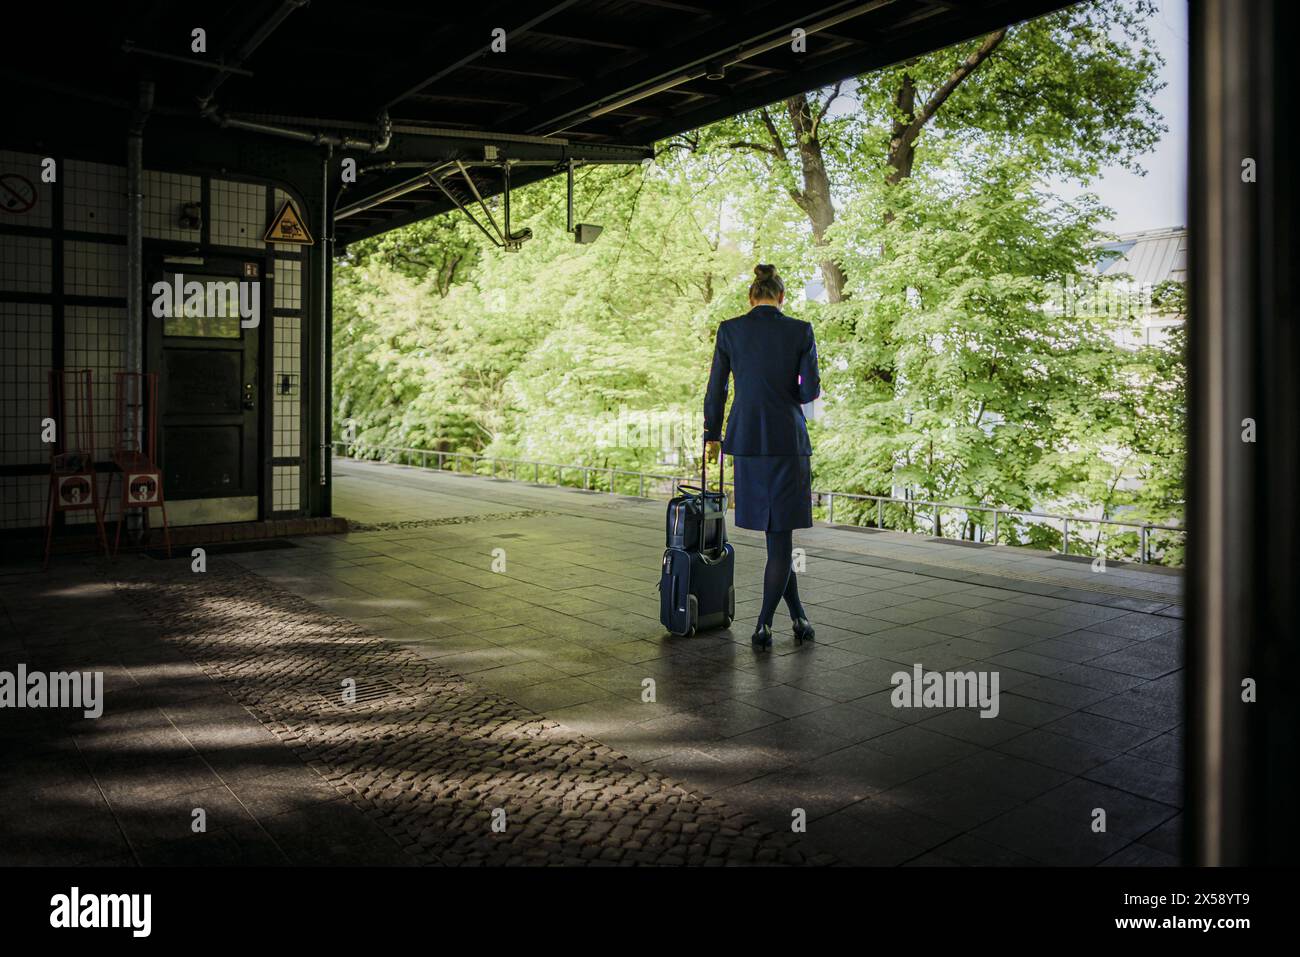 Symbolfoto zum Thema berufstaetige Frauen. Eine Frau im Business Outfit steht mit einem Reisekoffer an einem Bahnsteig und wartet auf den Zug. Berlin, Stock Photo